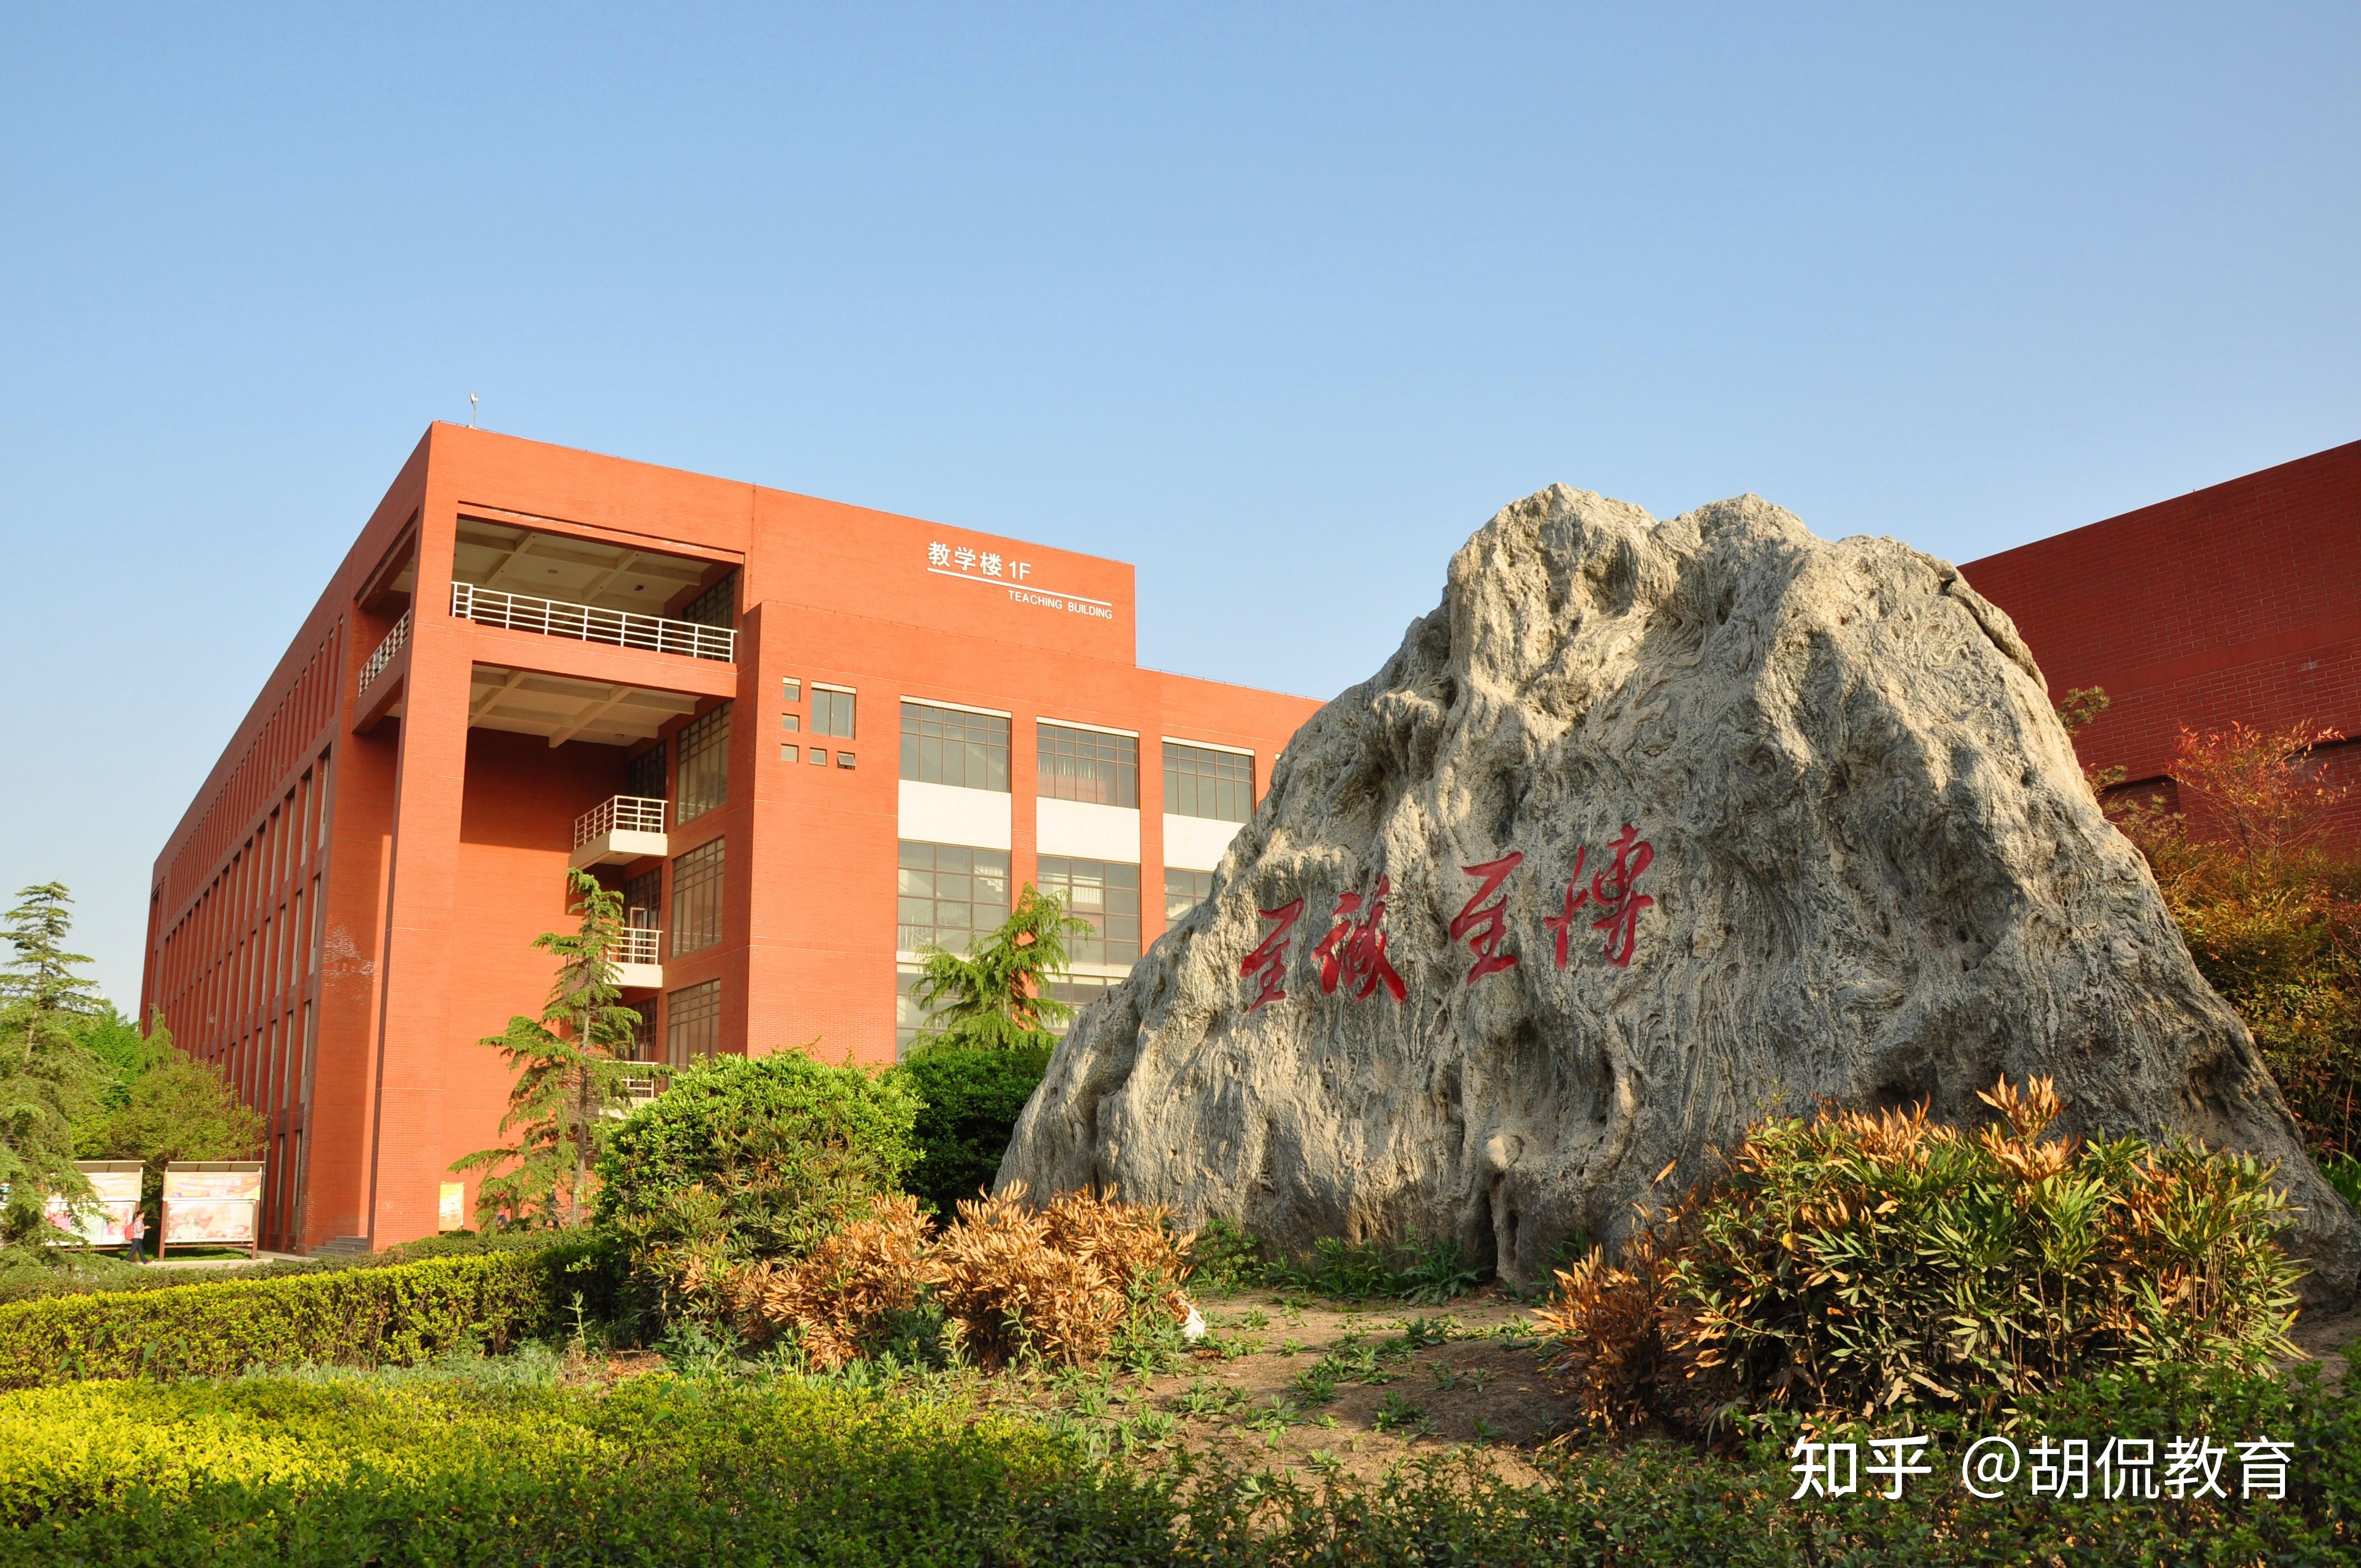 陕西科技大学主校区位于古都西安,拥有太华路,未央,咸阳三大校区,这是